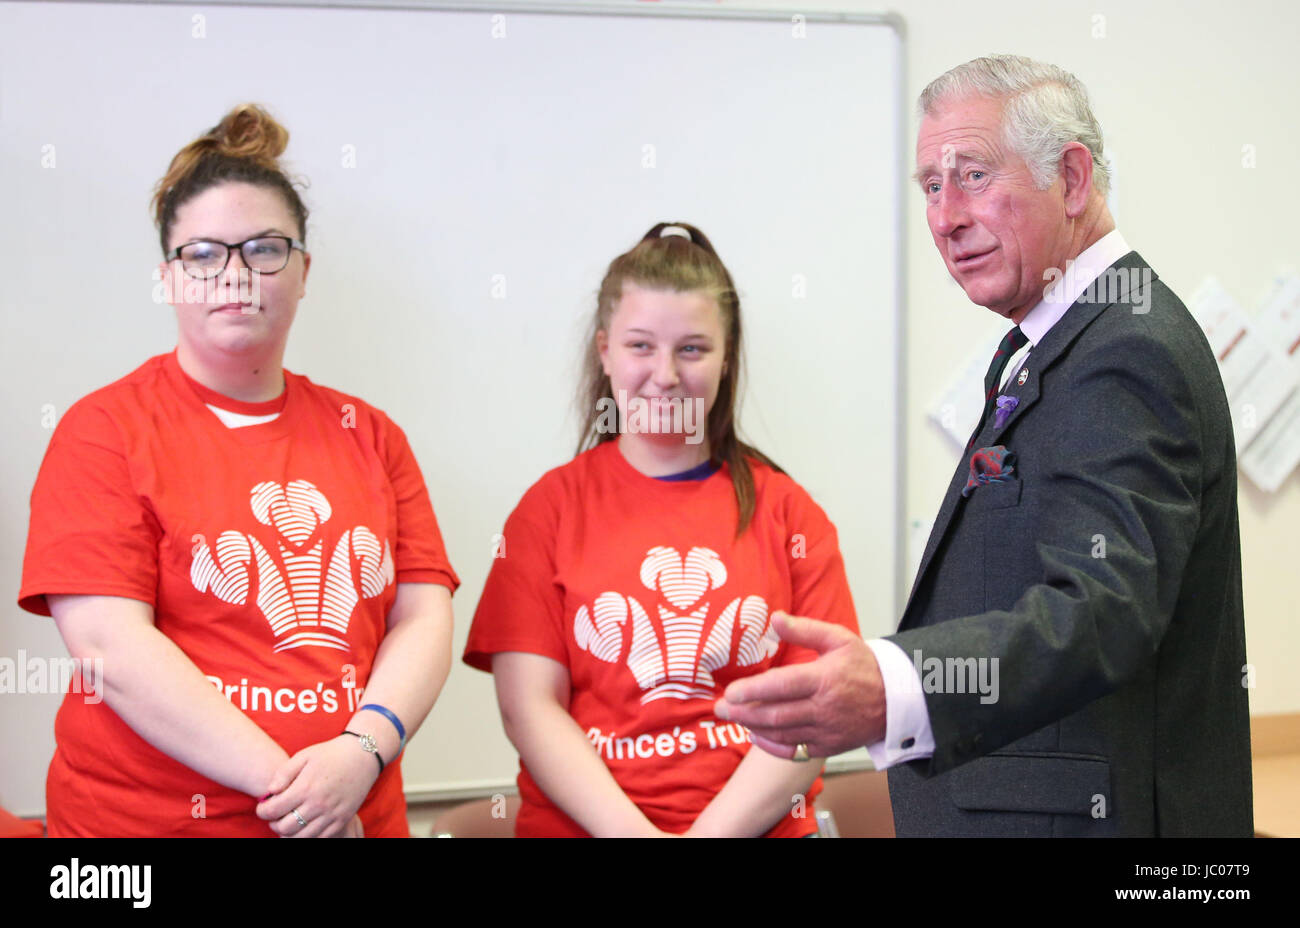 Le Prince de Galles, connu sous le nom de duc de Rothesay tandis qu'en Ecosse, lors de la visite d'un projet Prince's Trust à la rencontre des jeunes qui viennent de terminer le Prince's Trust au programme de l'équipe d'Aberdeen Hall. Banque D'Images